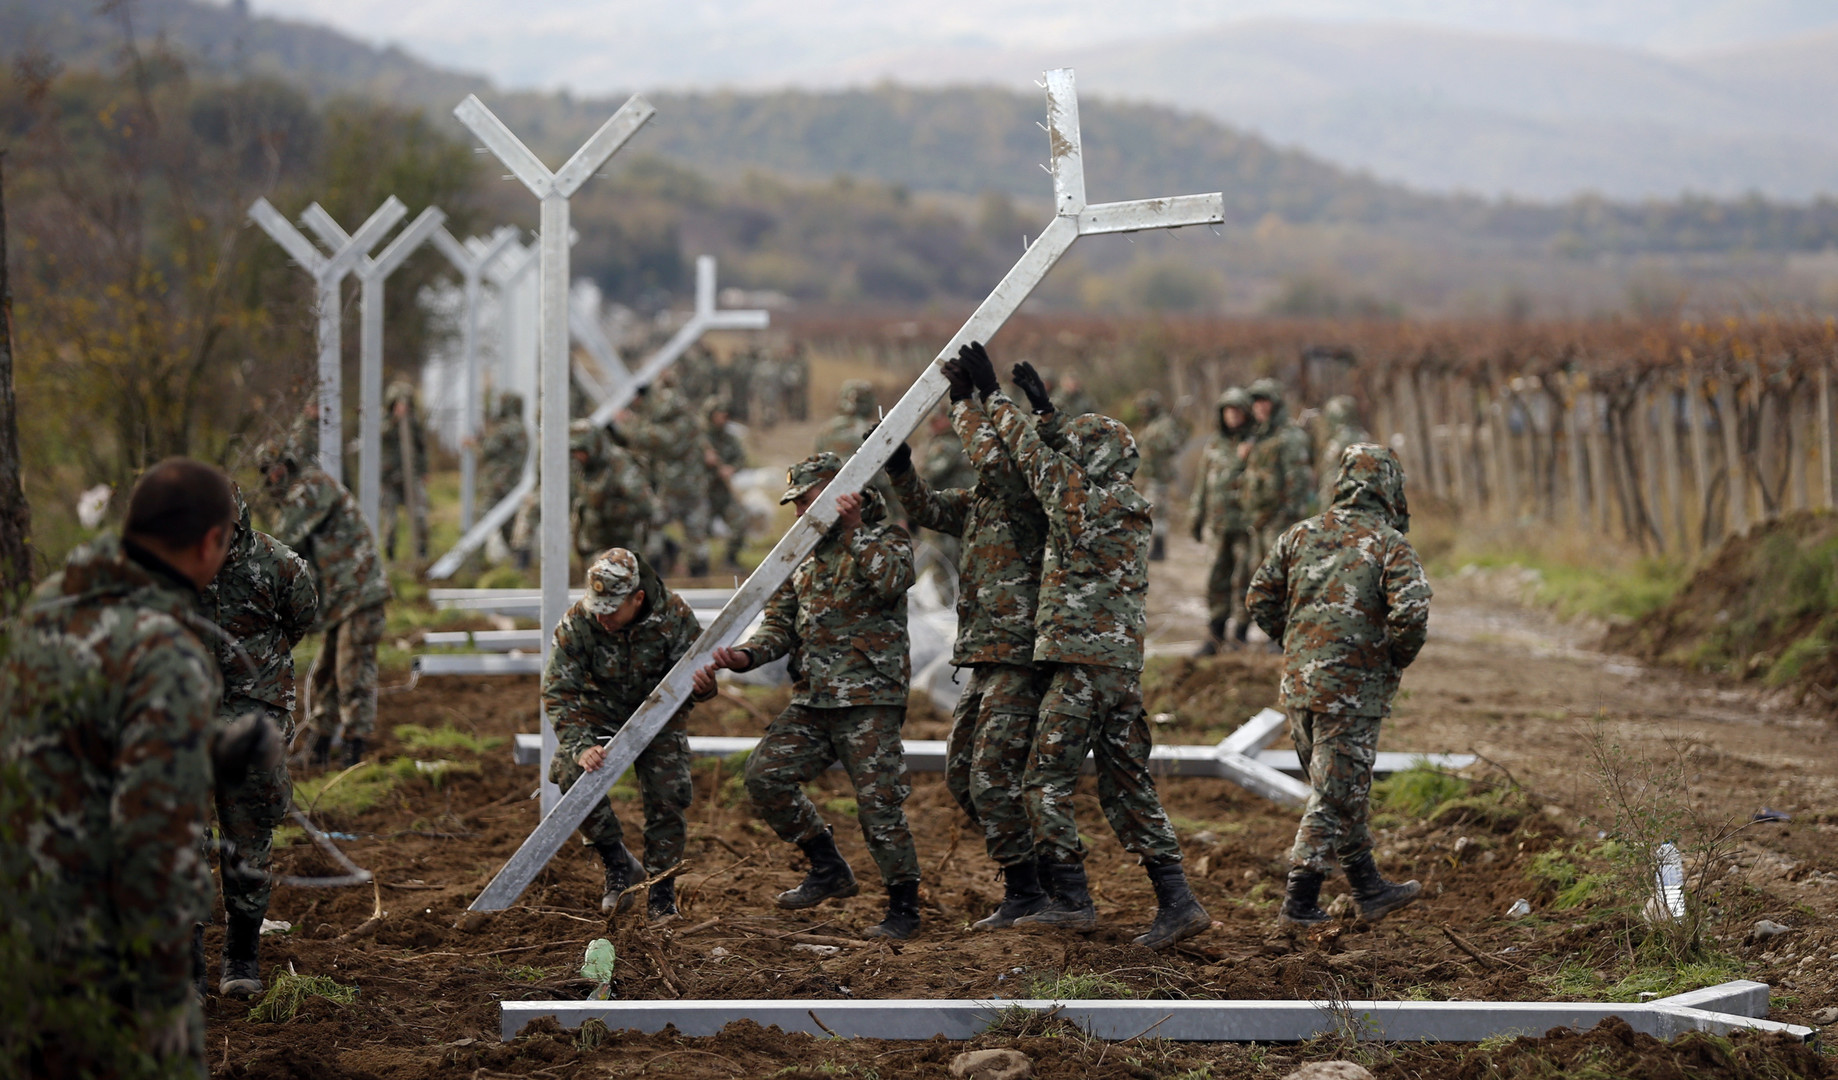 Des heurts sur fond de construction d'une barrière à la frontière gréco-macédonienne (PHOTOS)